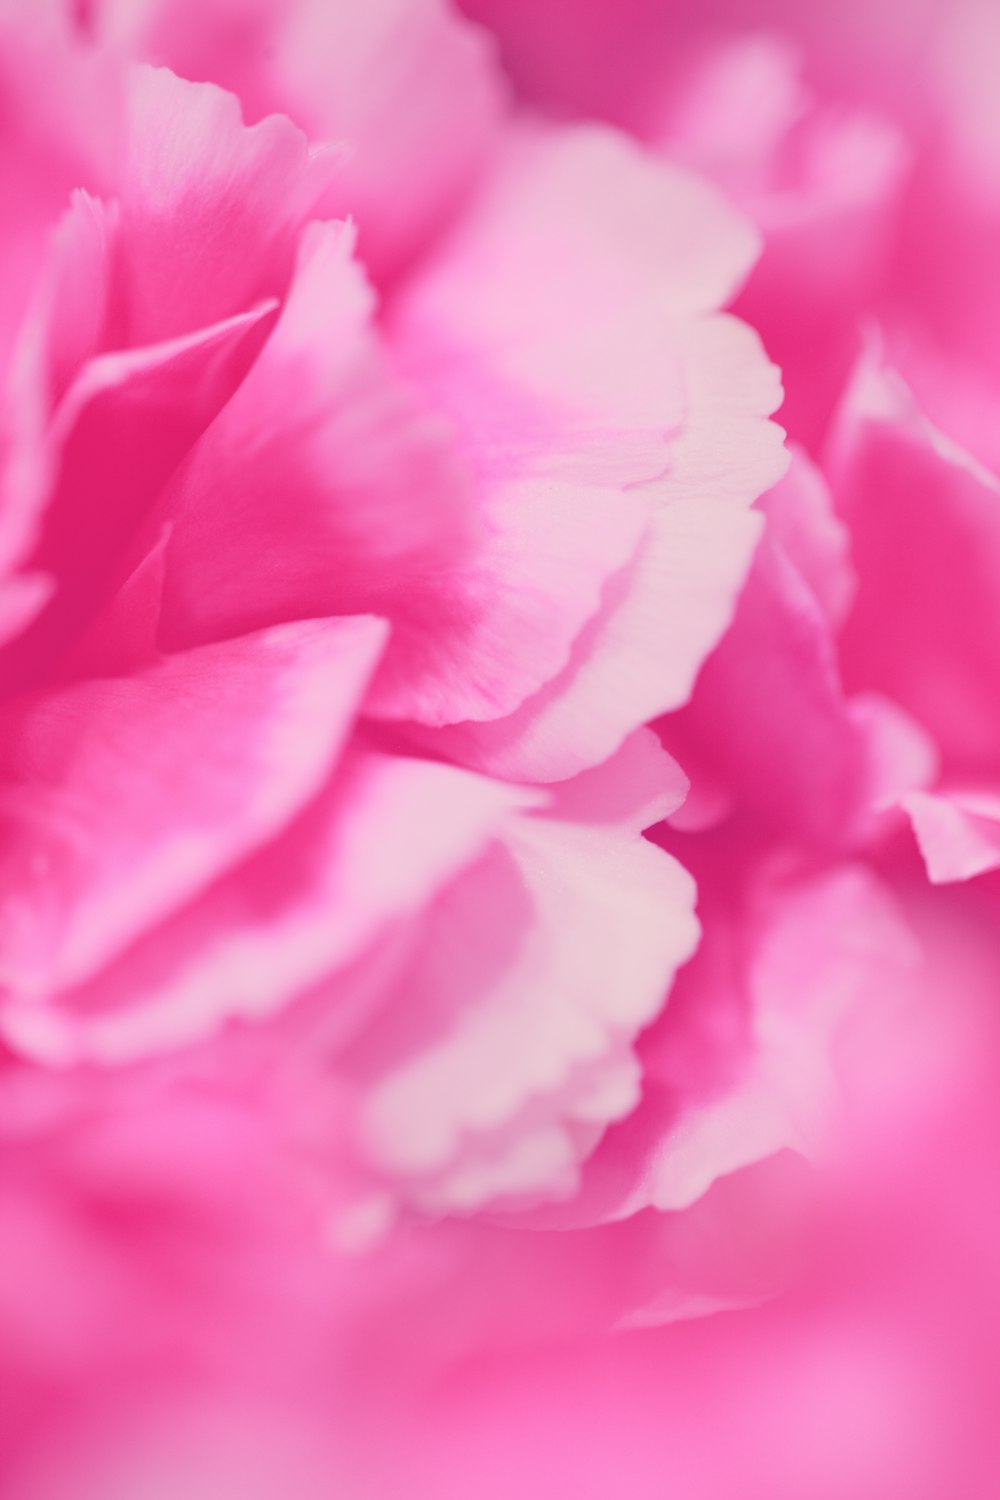 um close up de uma flor rosa com um fundo desfocado